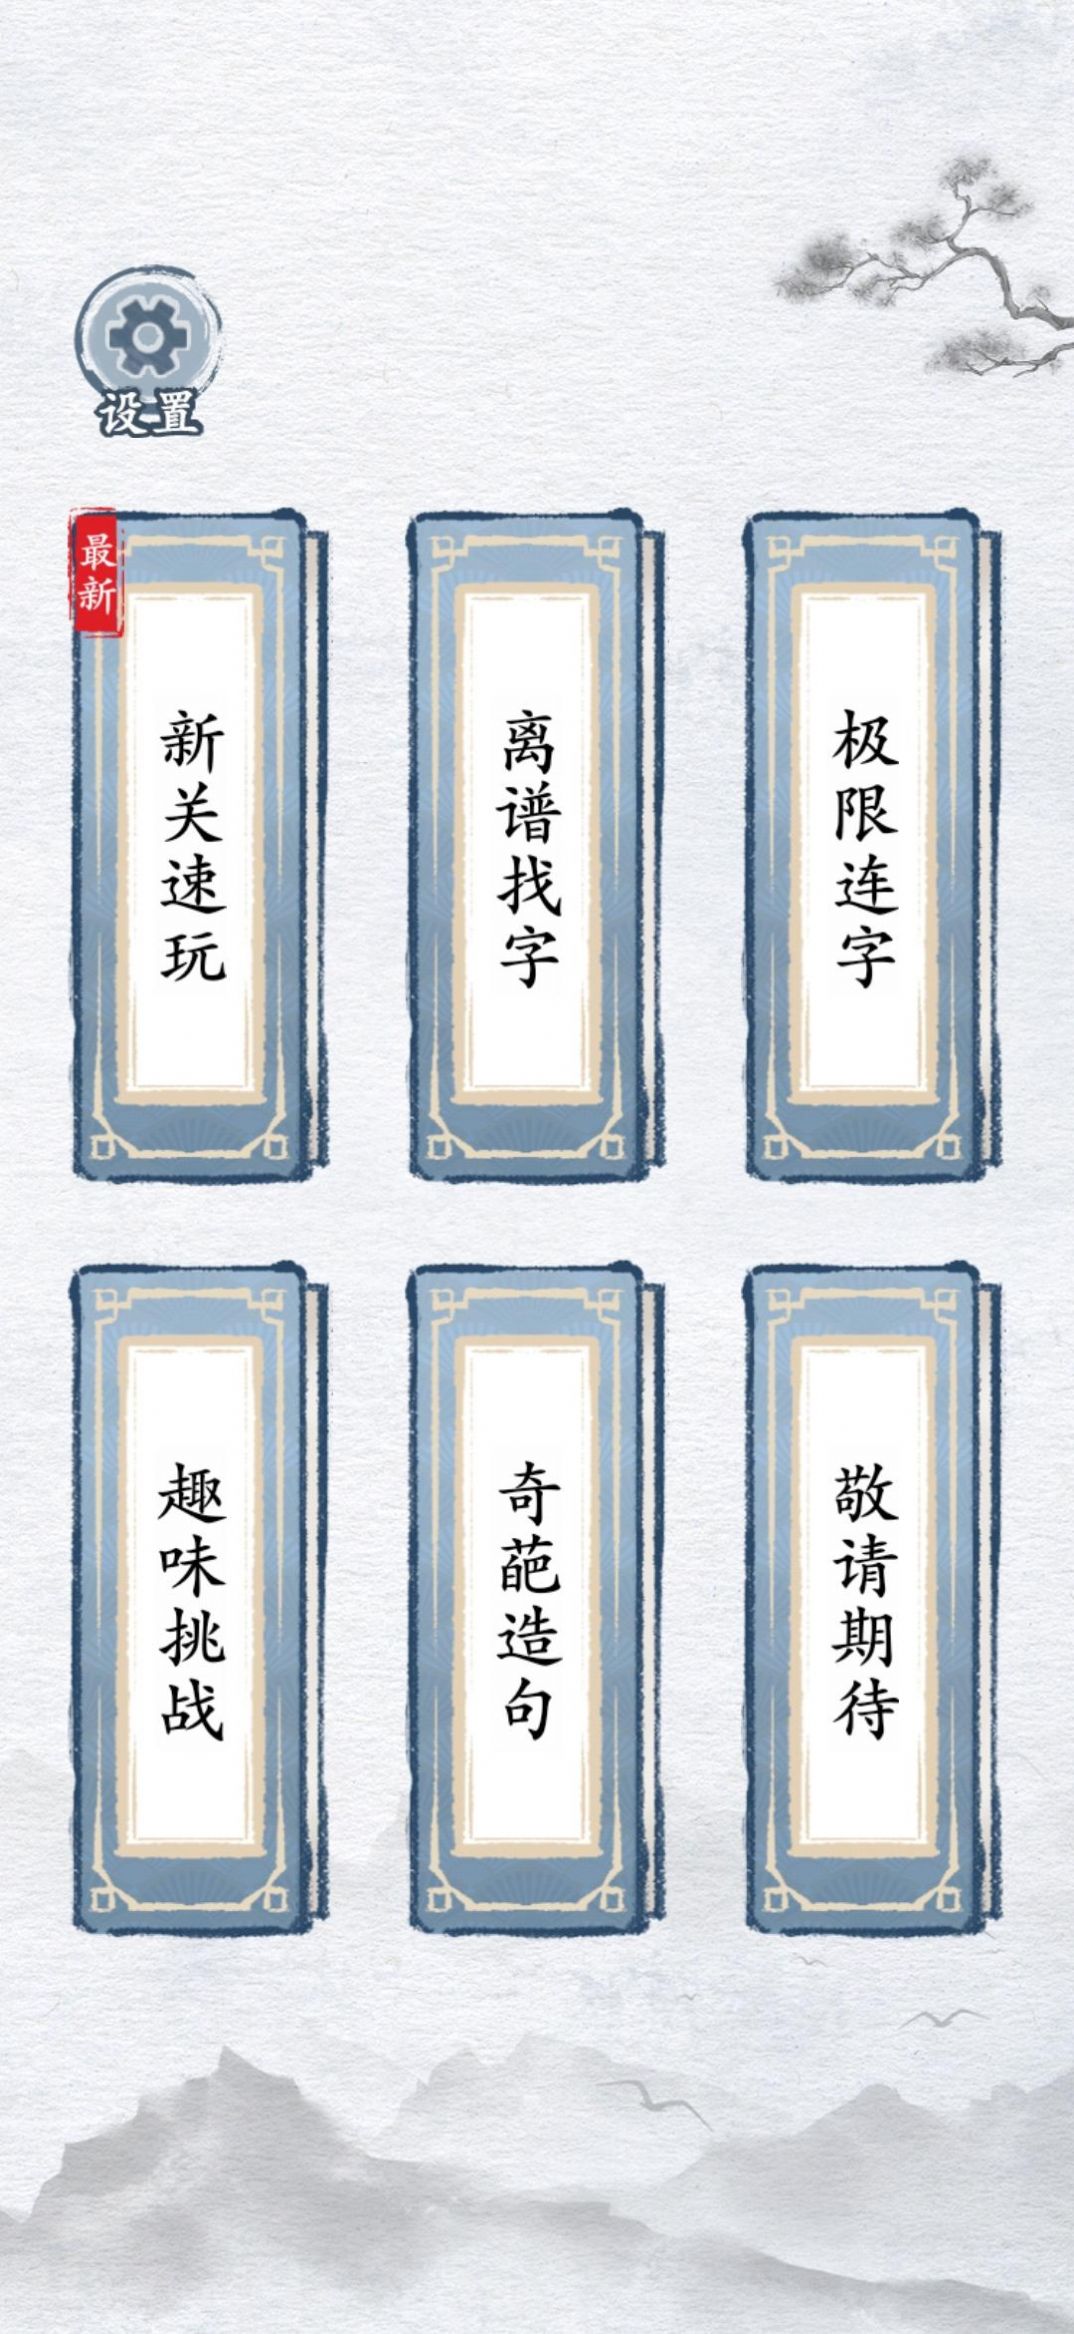 汉字进化游戏下载免广告版图片1